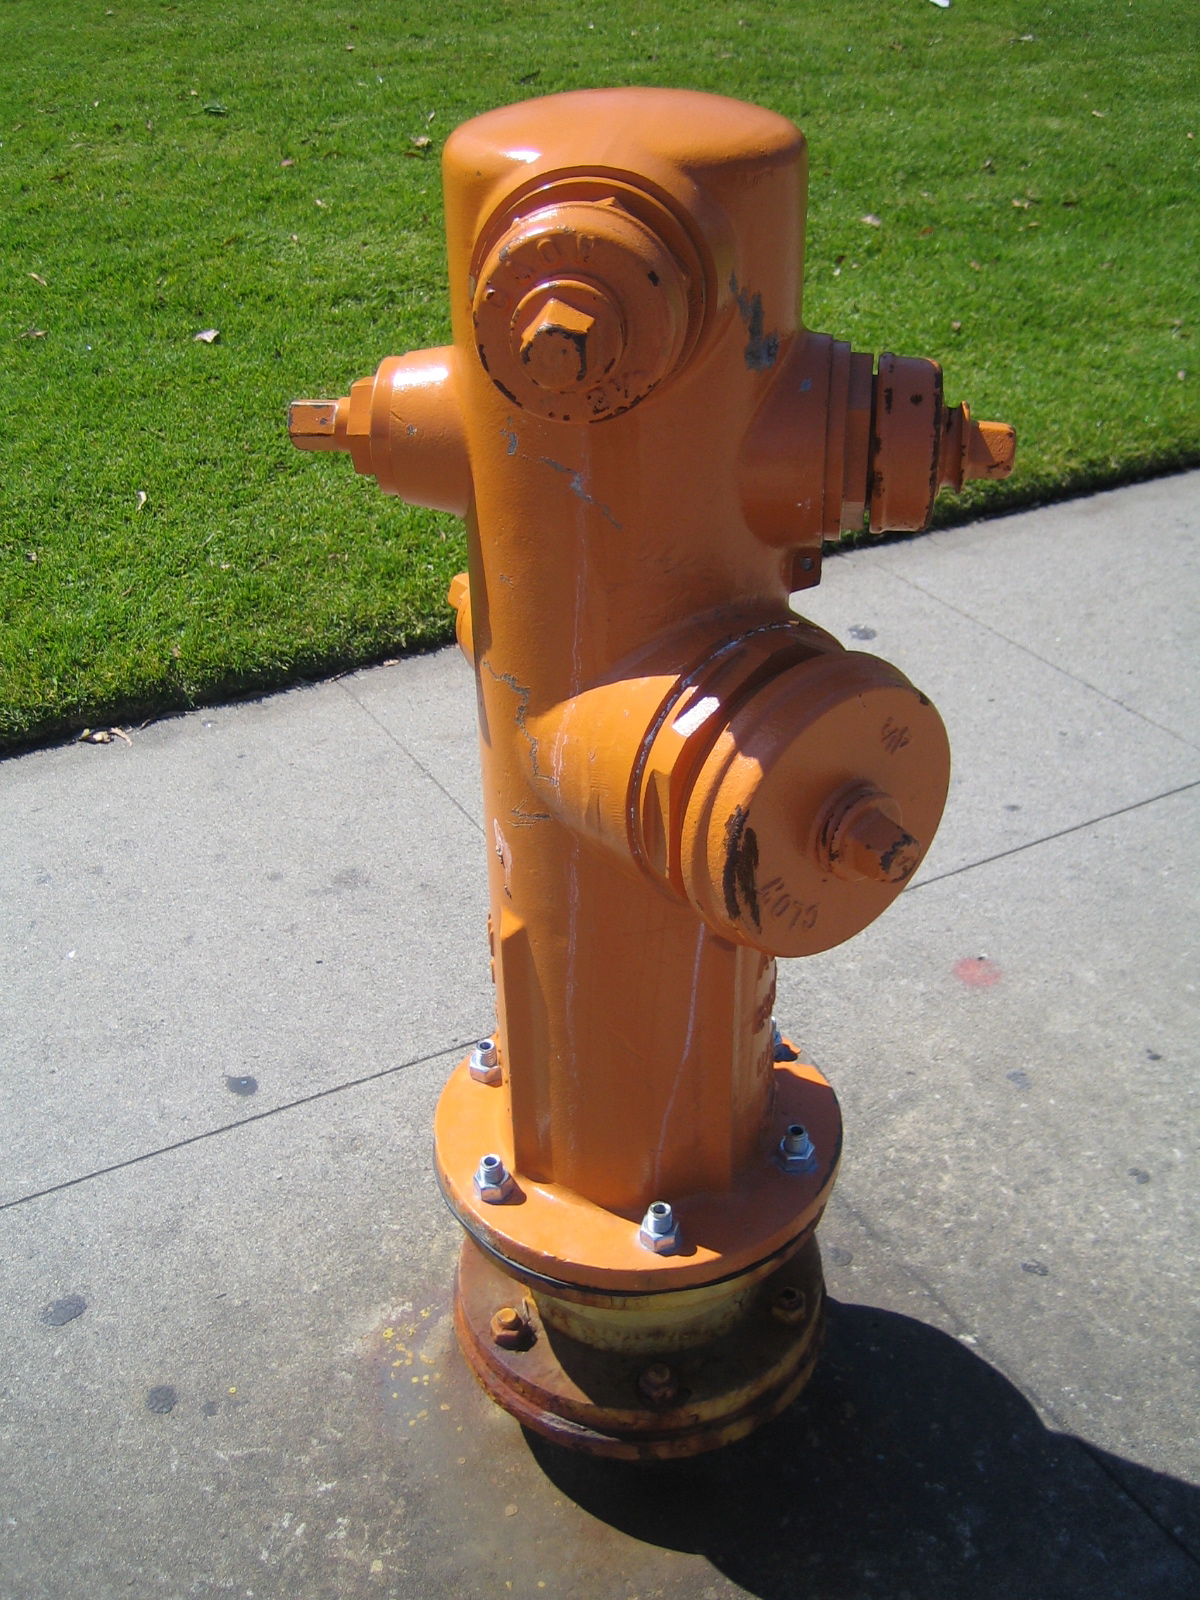 an orange fire hydrant sits on the sidewalk